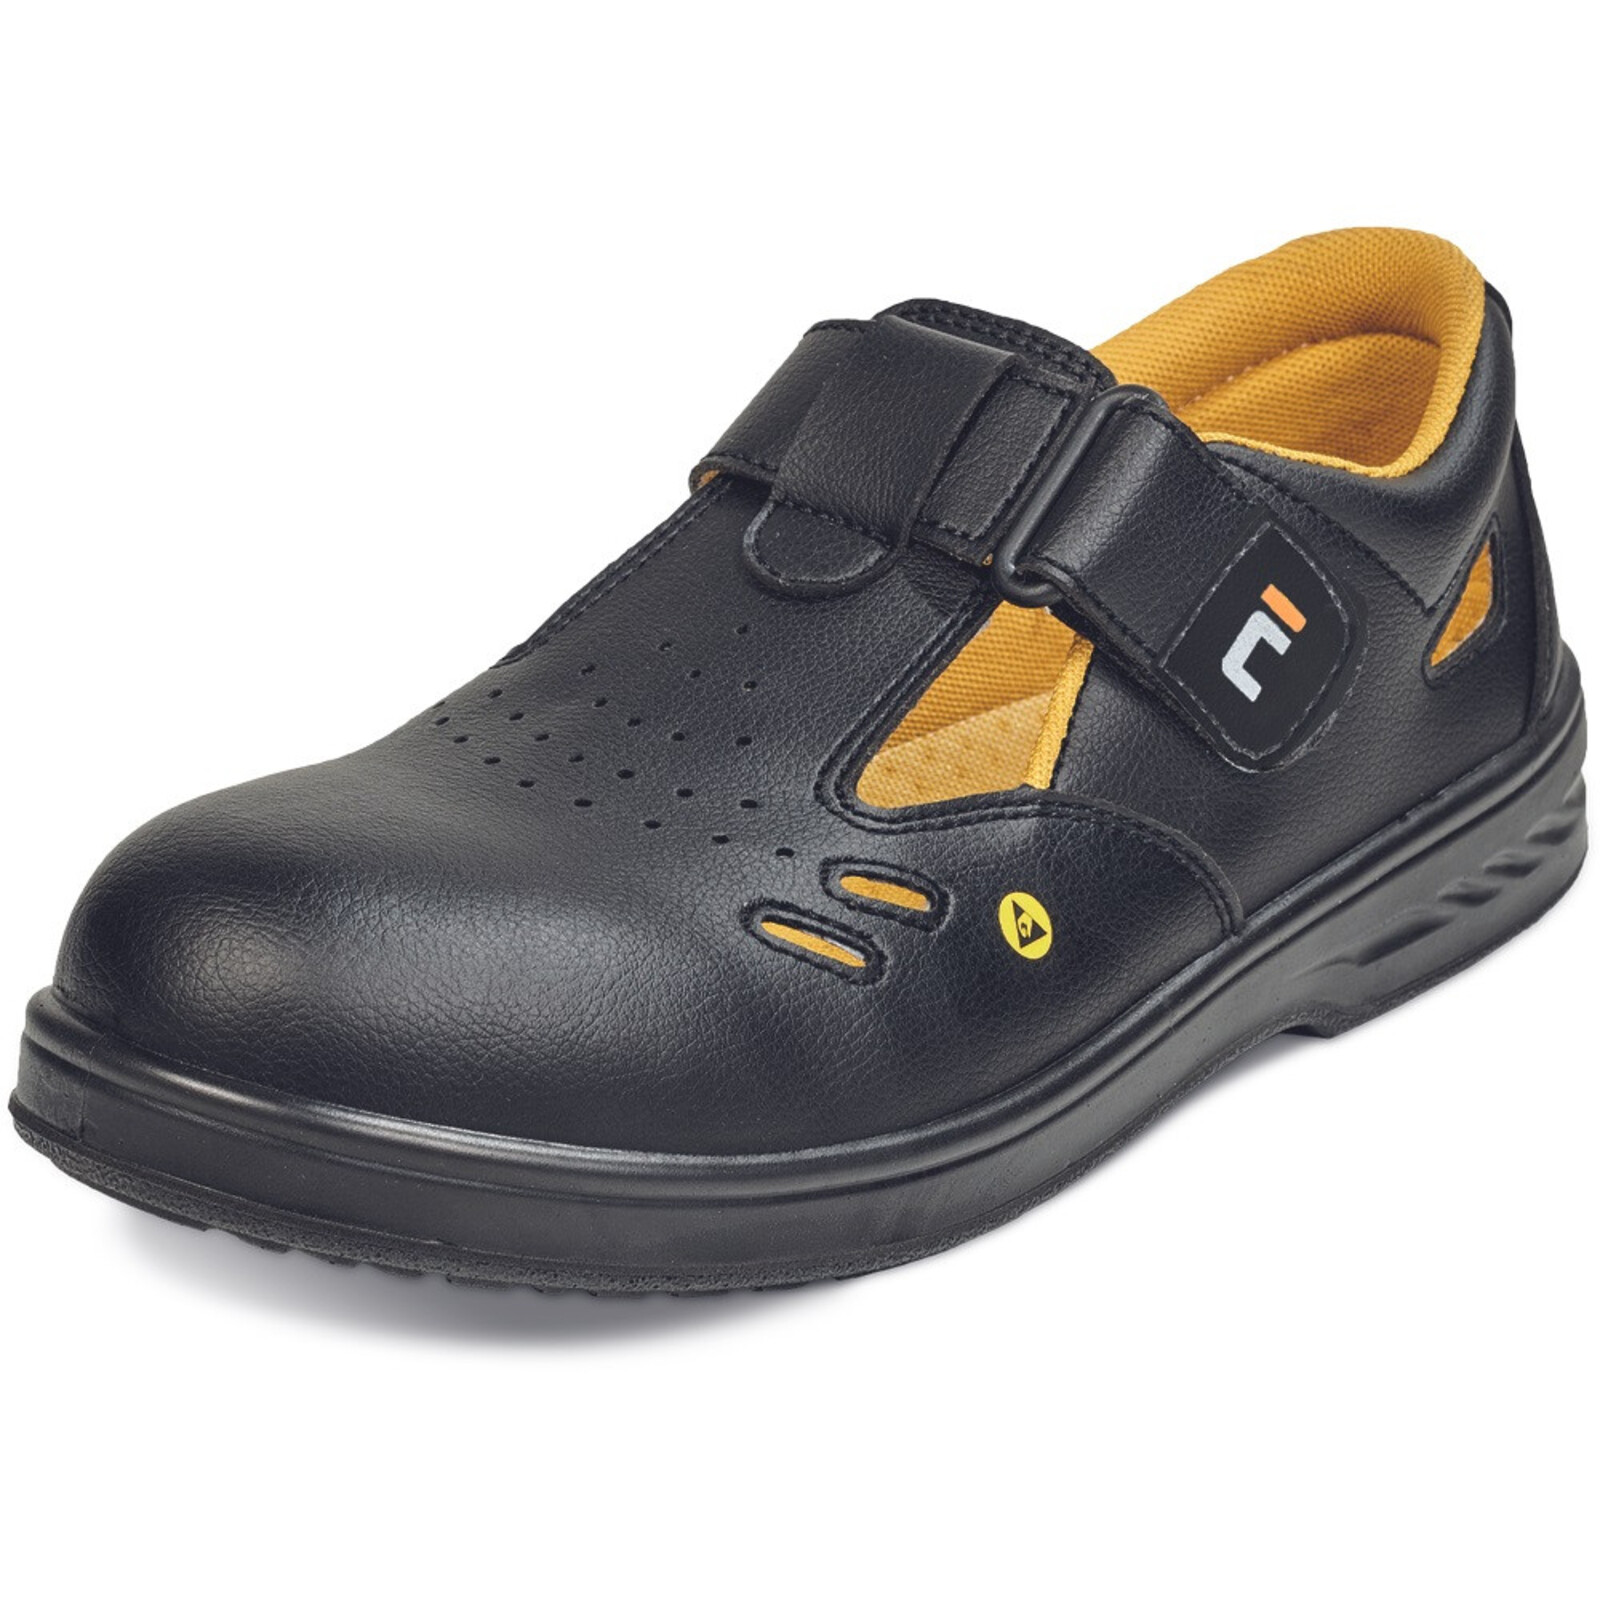 Bezpečnostné sandále Raven MF ESD S1 SRC - veľkosť: 35, farba: čierna